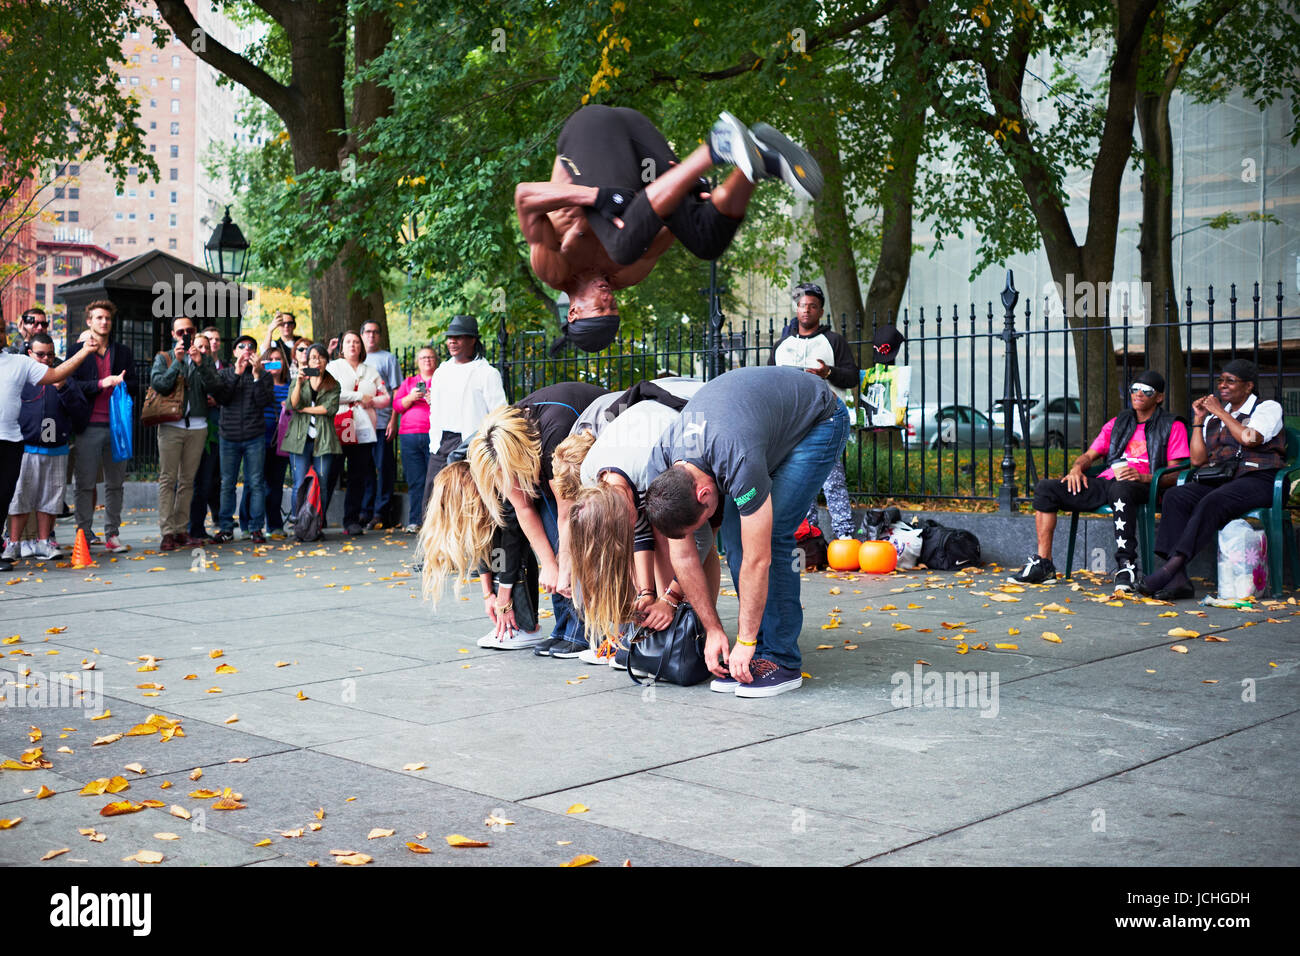 NEW YORK CITY - 18. Oktober 2014: ein Mann aus einer Performance-Gruppe macht einen Salto über eine Reihe von Touristen auf der Straße in Lower Manhattan Stockfoto